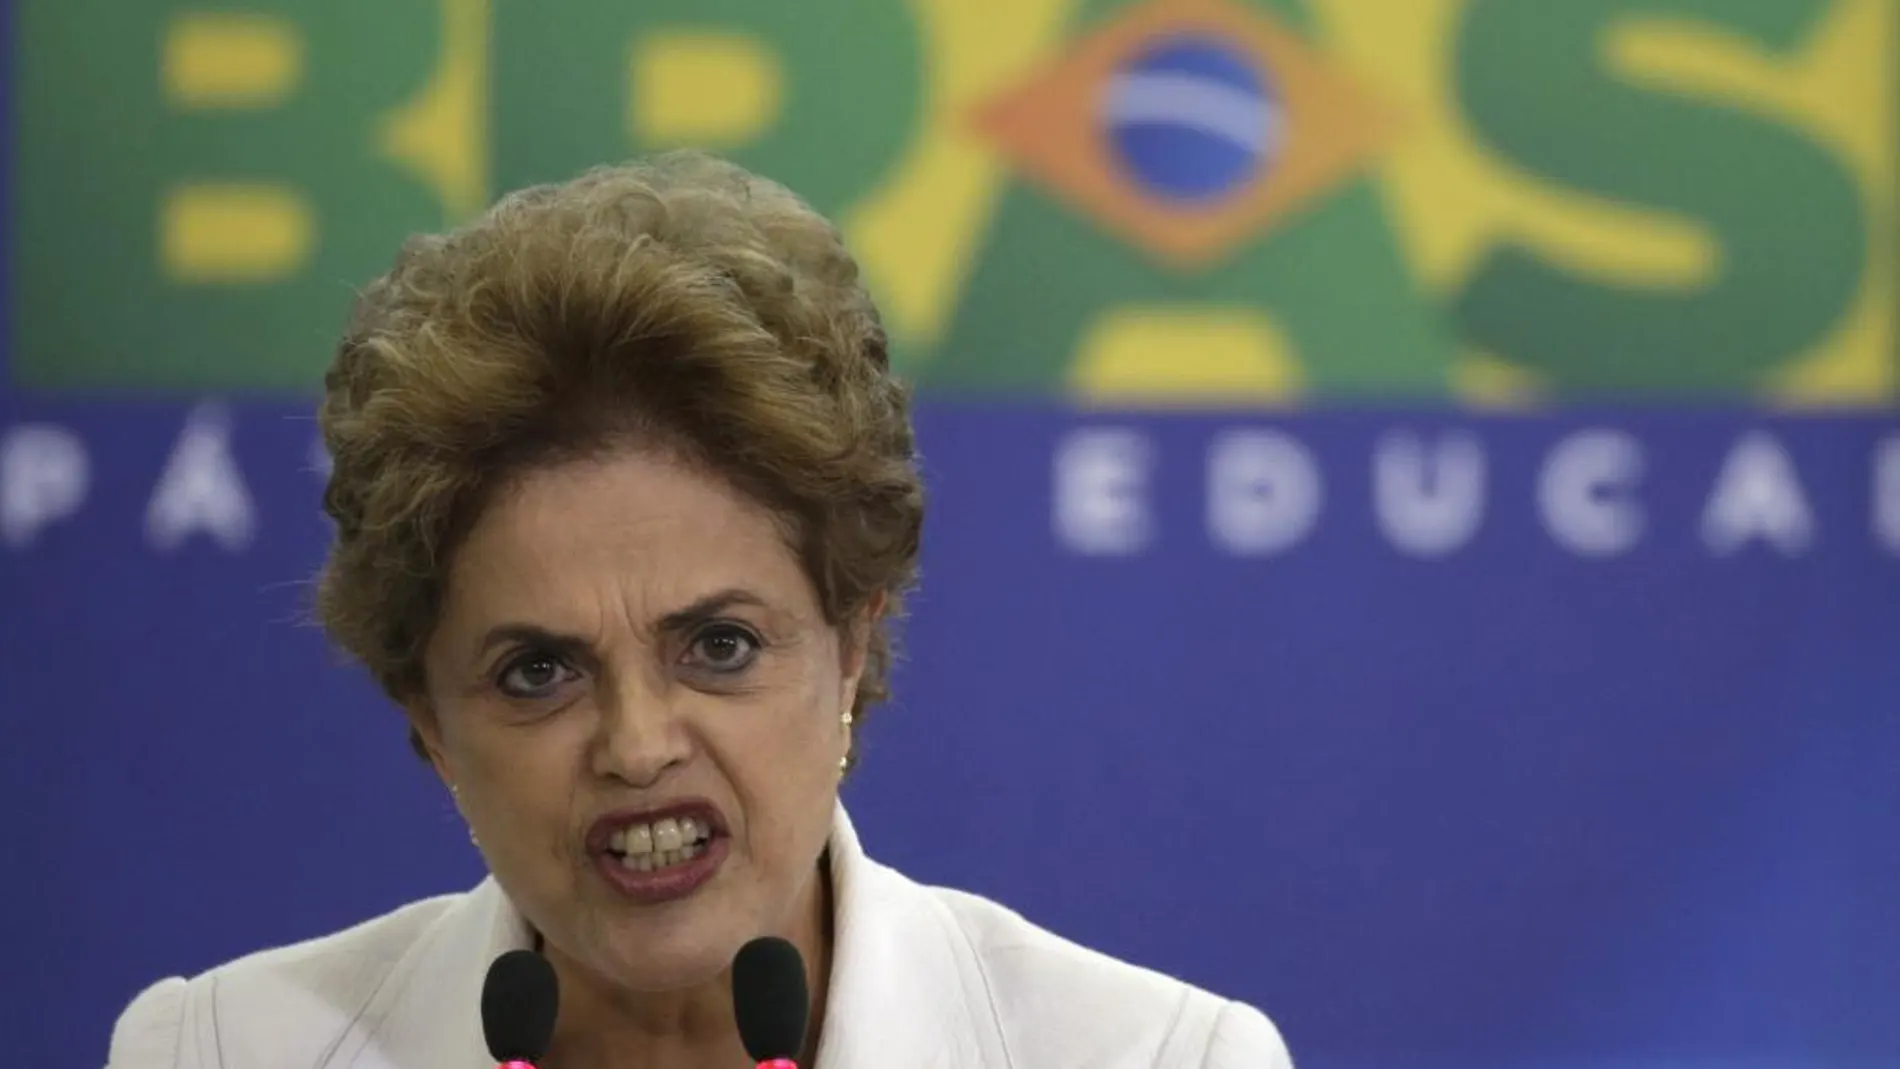 La presidenta brasileña, Dilma Rousseff, durante el discurso en el que acusó a su vicepresidente de ser "uno de los jefes de la conspiración"